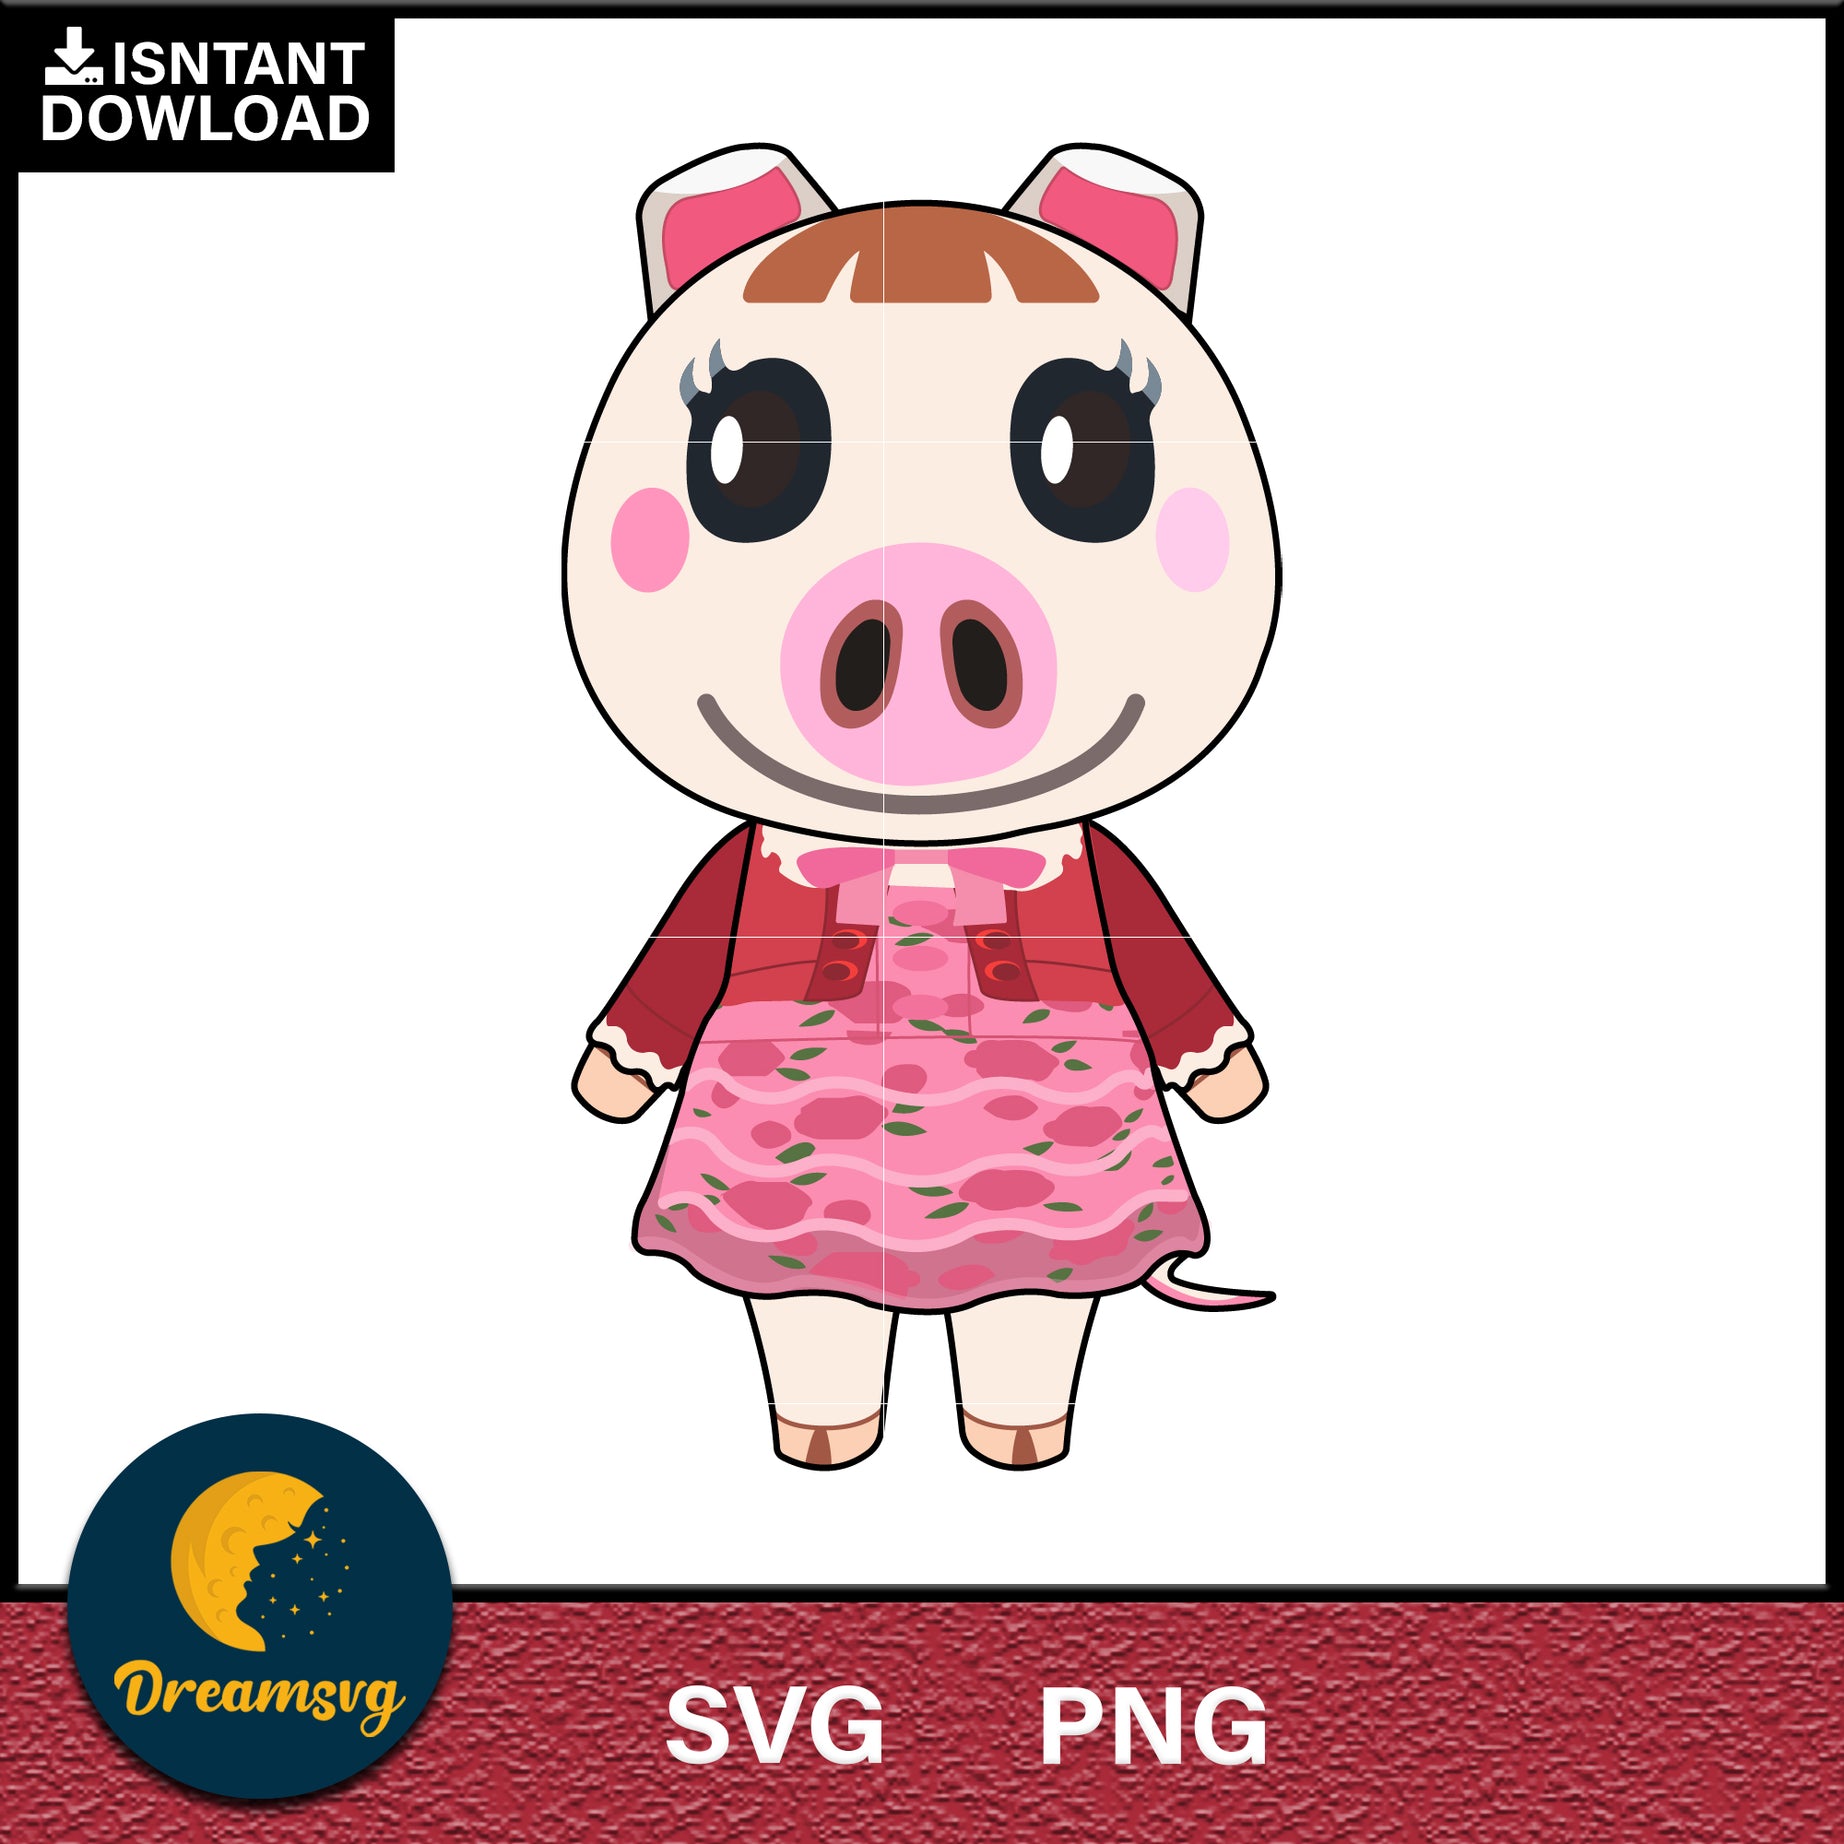 Lucy Animal Crossing Svg, Animal Crossing Svg, Animal Crossing Png, Cartoon svg, svg, png digital file